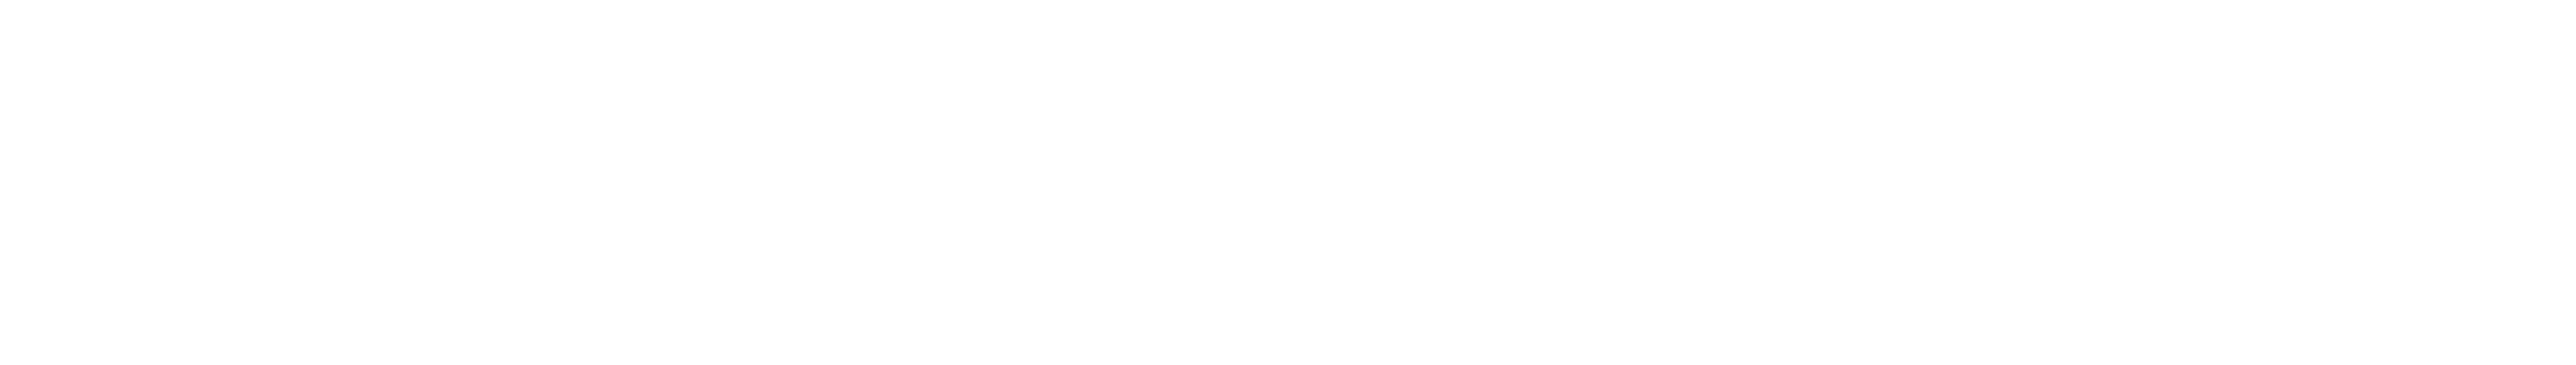 SyncCommerce Logo